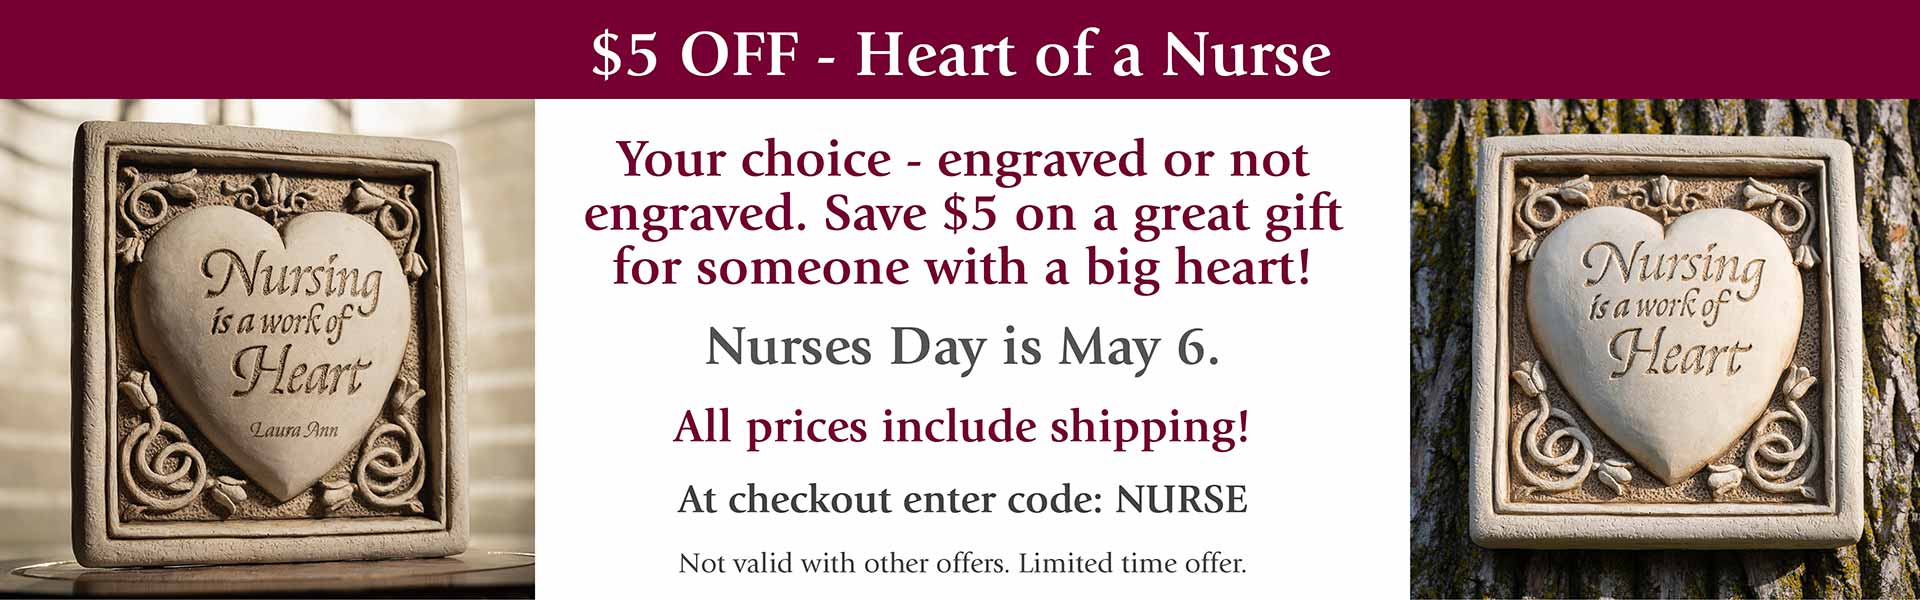 Heart of a Nurse sale